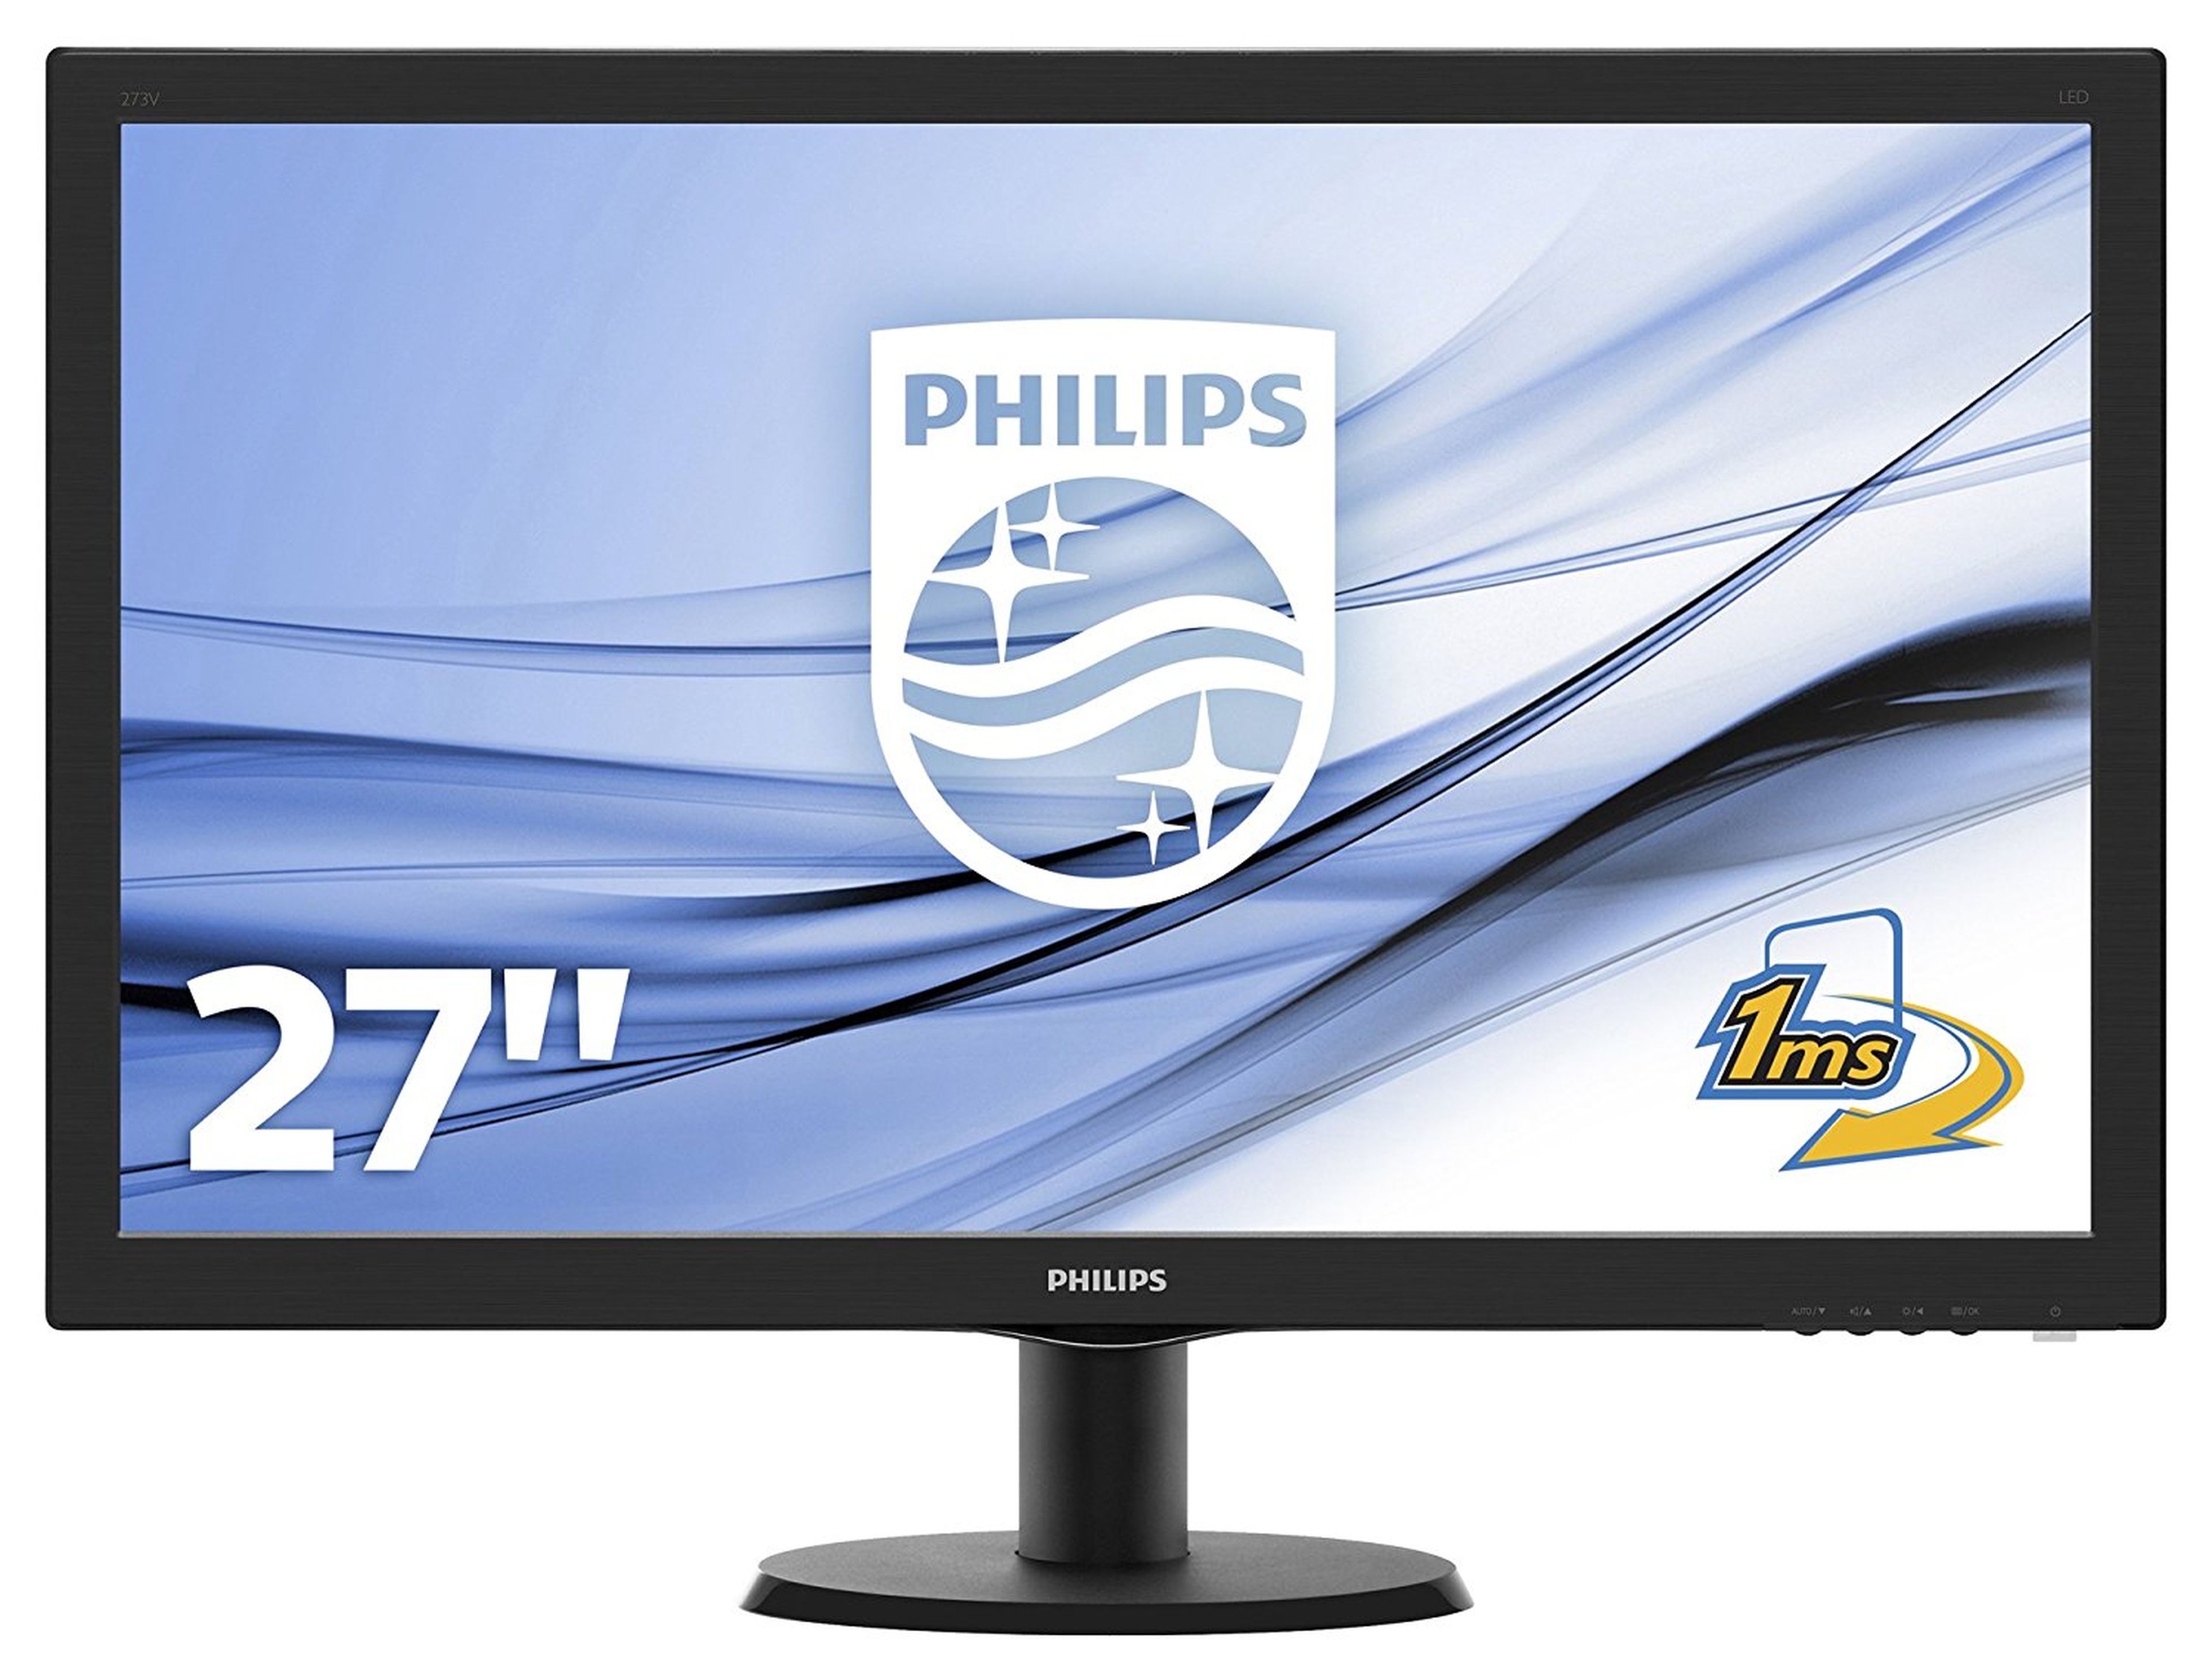 Philips 273V5LHAB/00